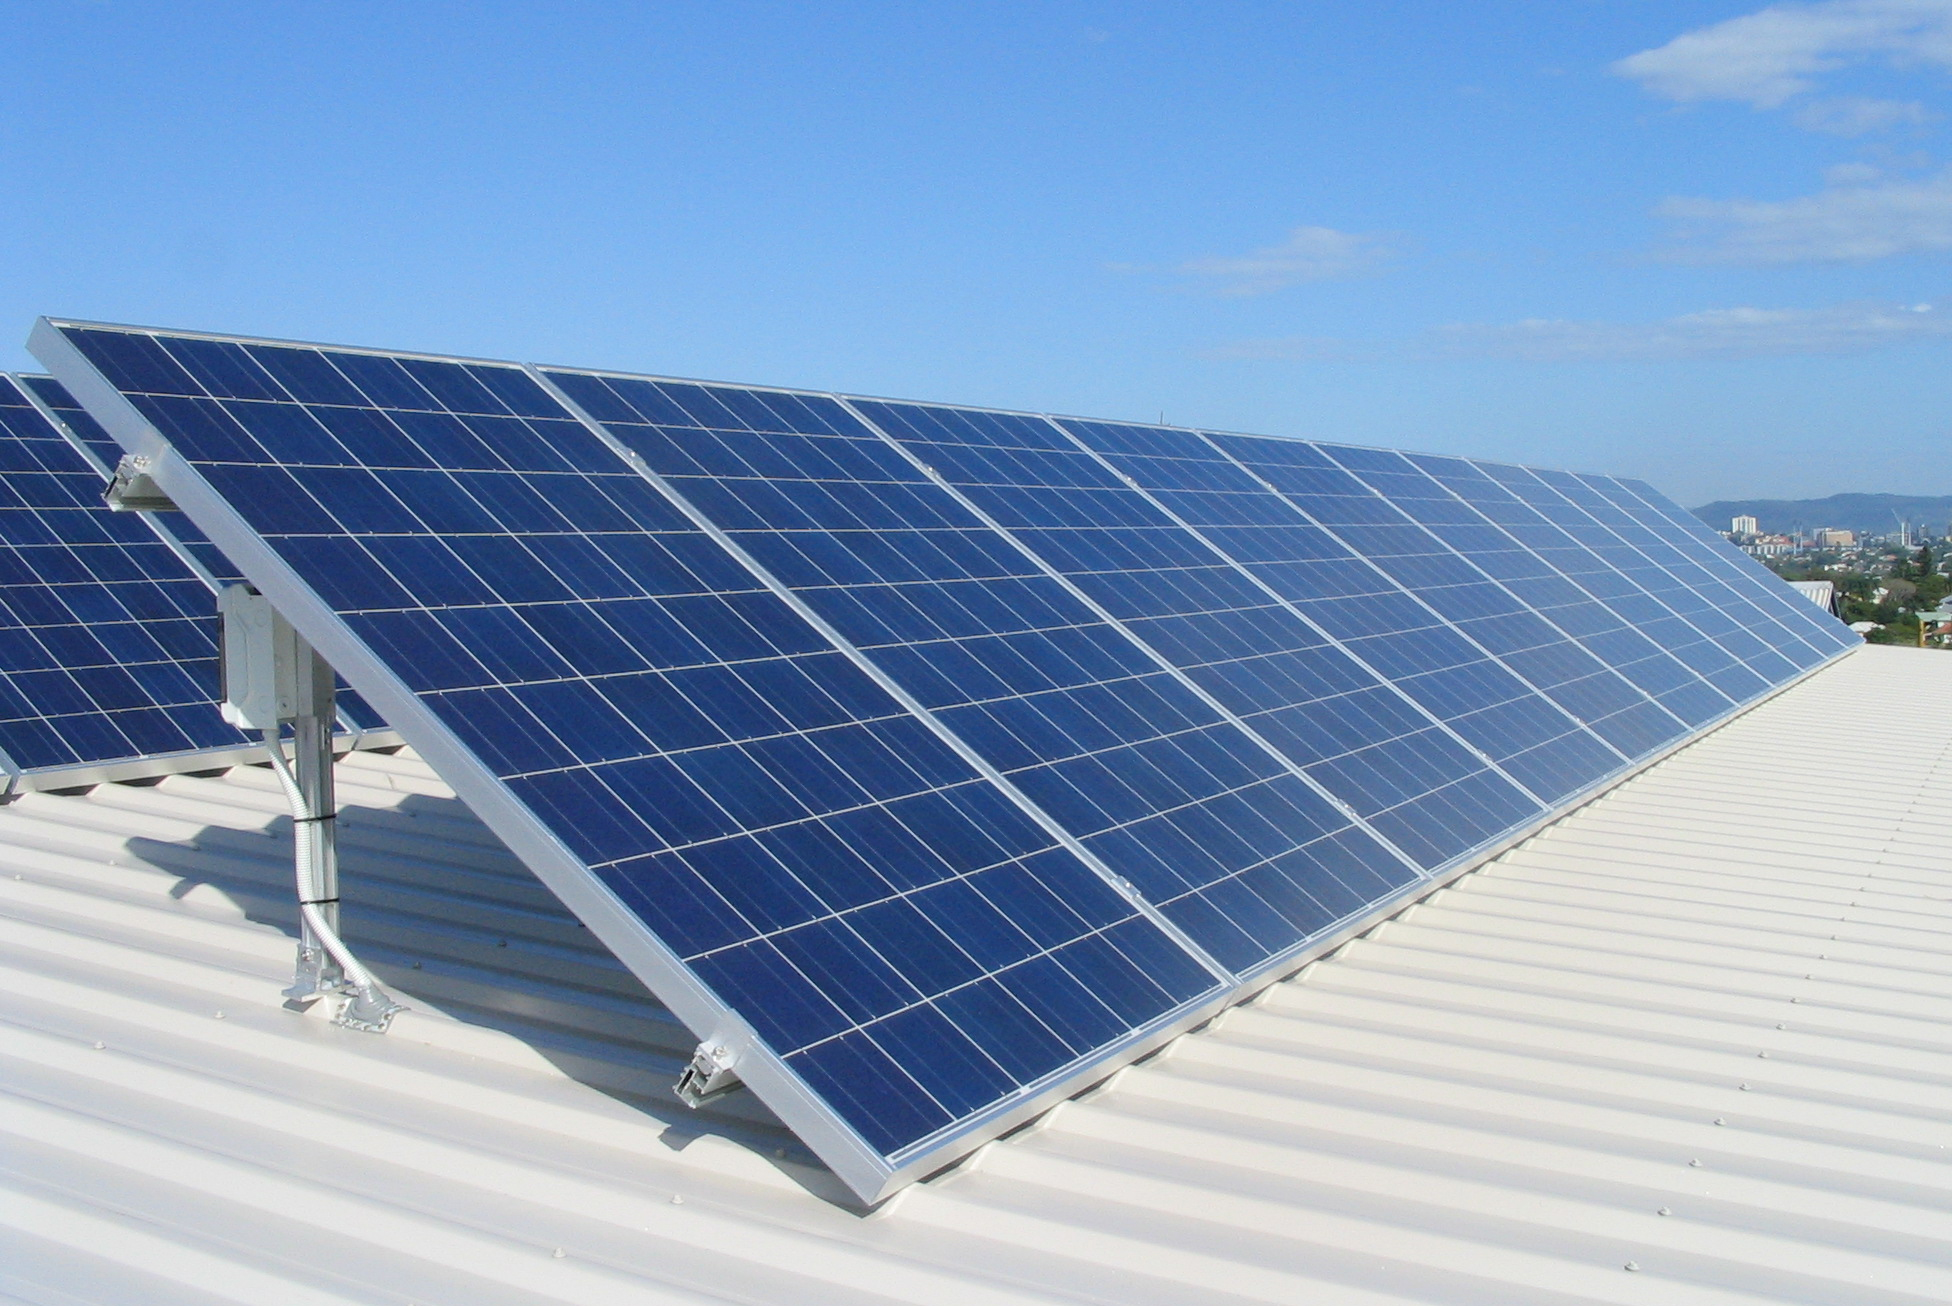   إنشاء 17 محطة للطاقة الشمسية بالمدن الجديدة